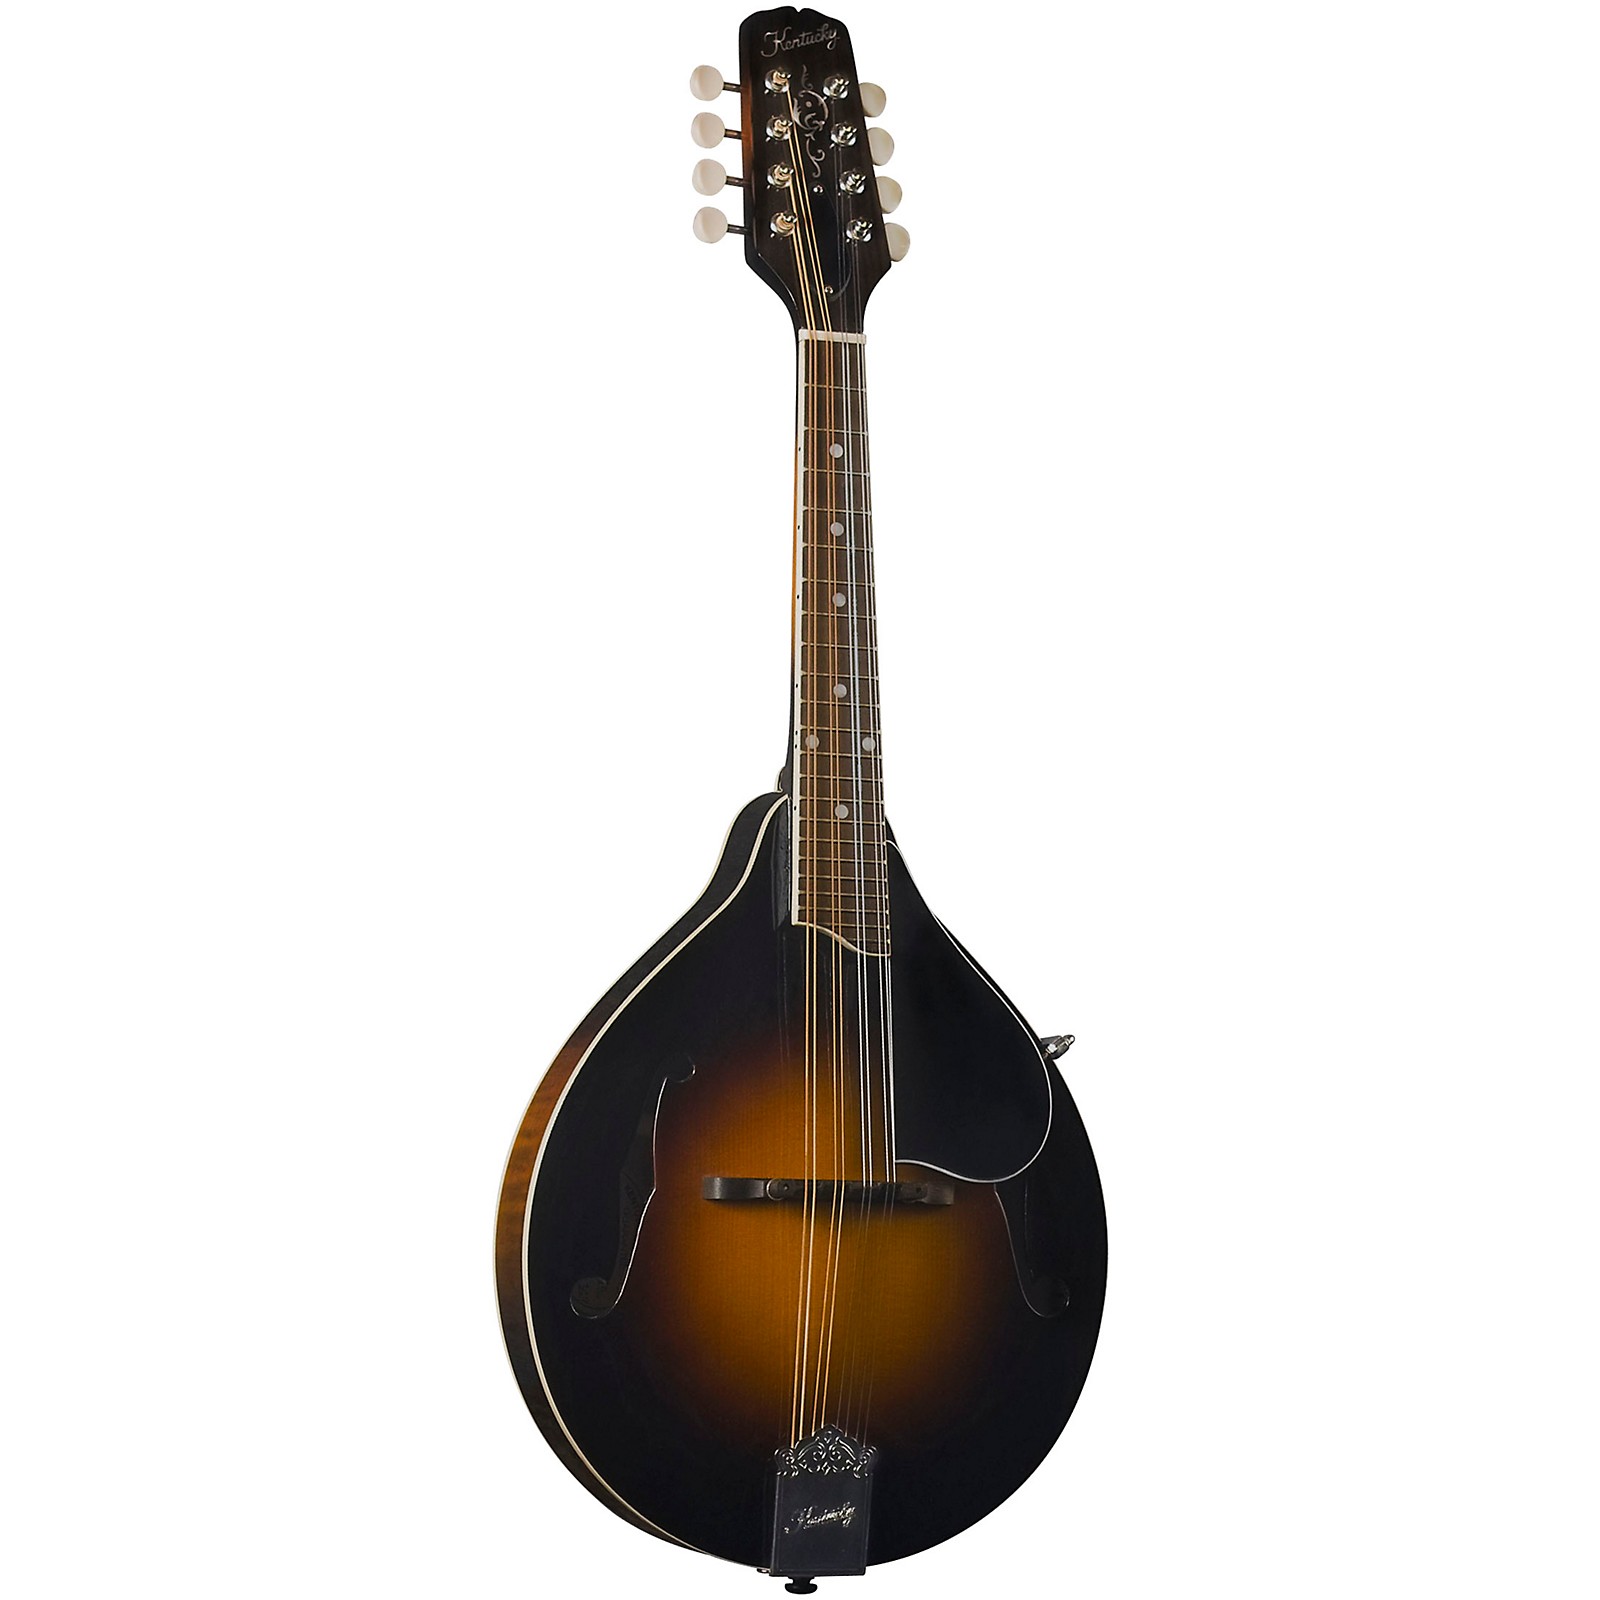 kentucky mandolin company website